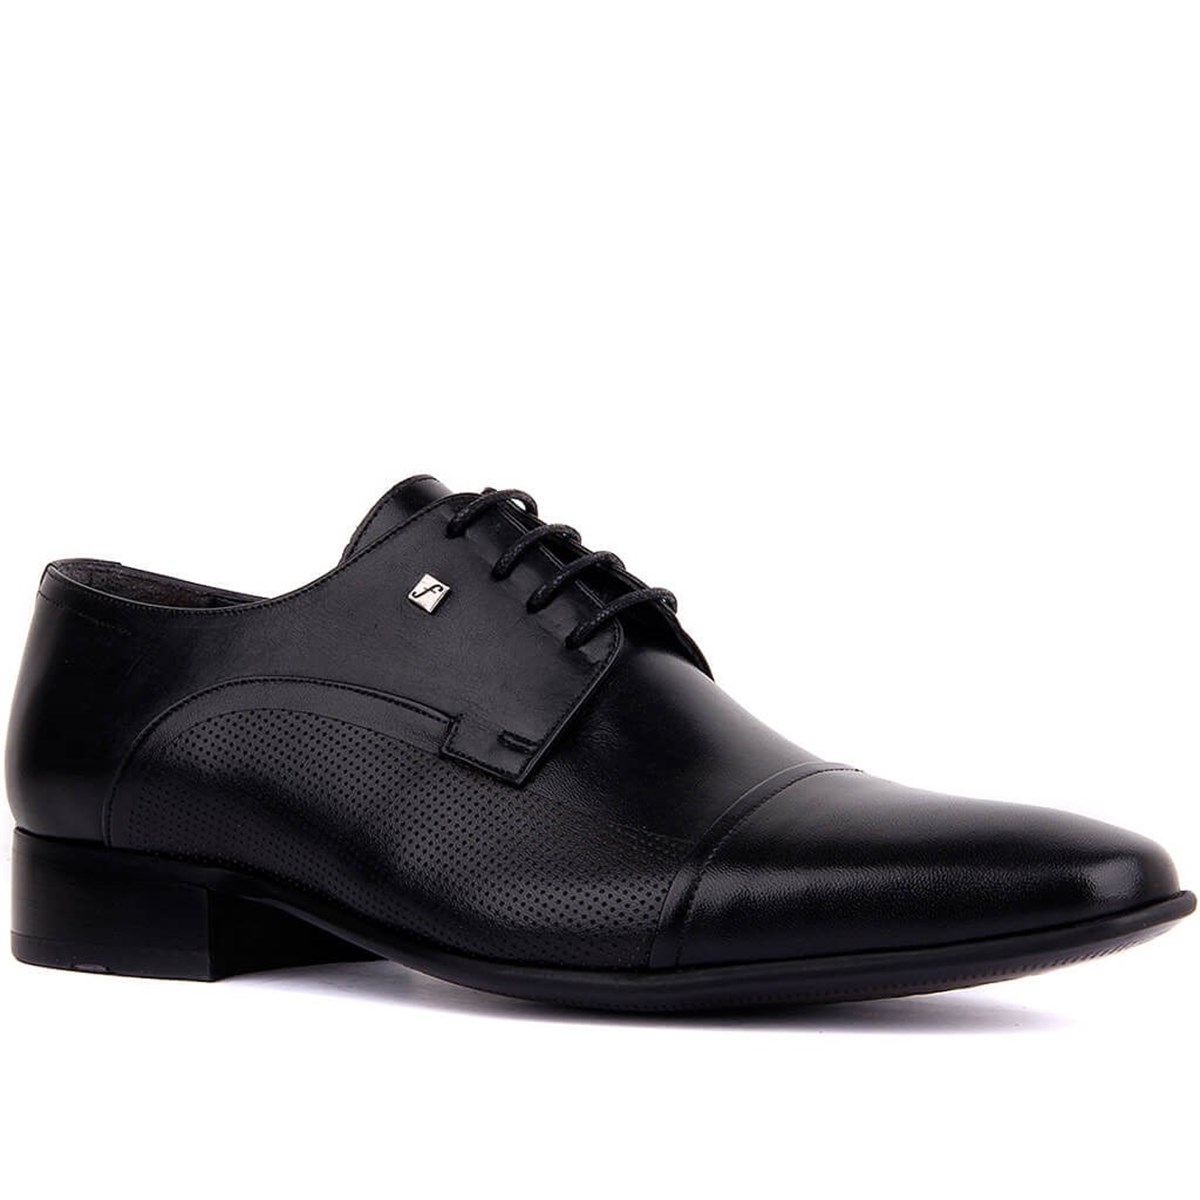 Erkek Hakiki Deri Klasik Ayakkabı, Renk: Siyah, Beden: 38